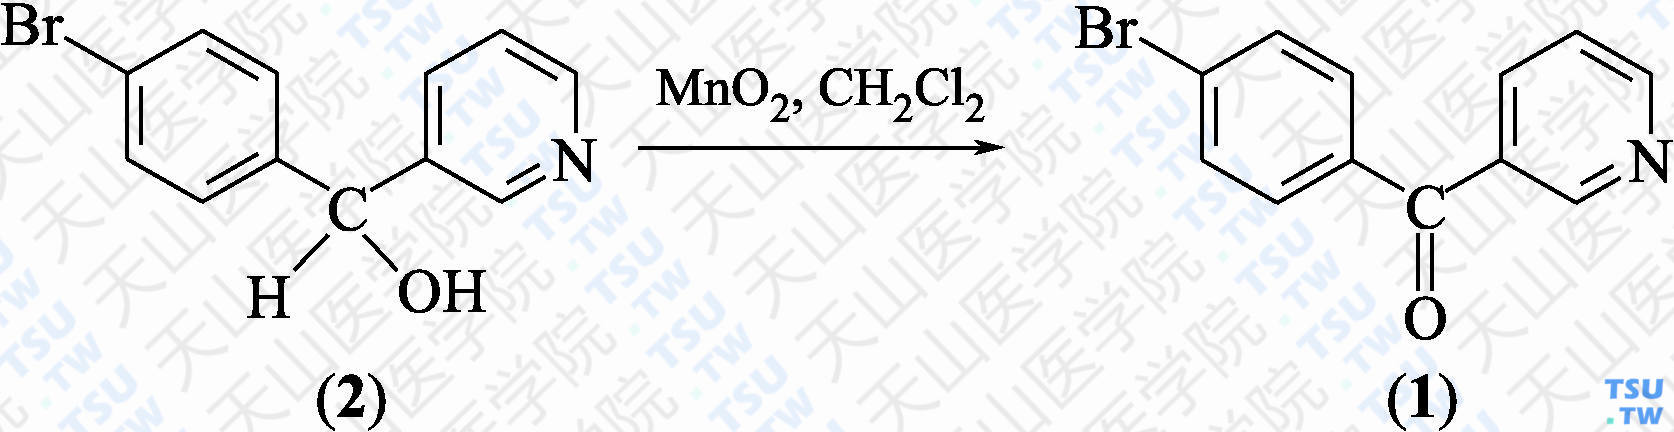 3-（4-溴苯甲酰基）吡啶（分子式：C<sub>12</sub>H<sub>8</sub>BrNO）的合成方法路线及其结构式